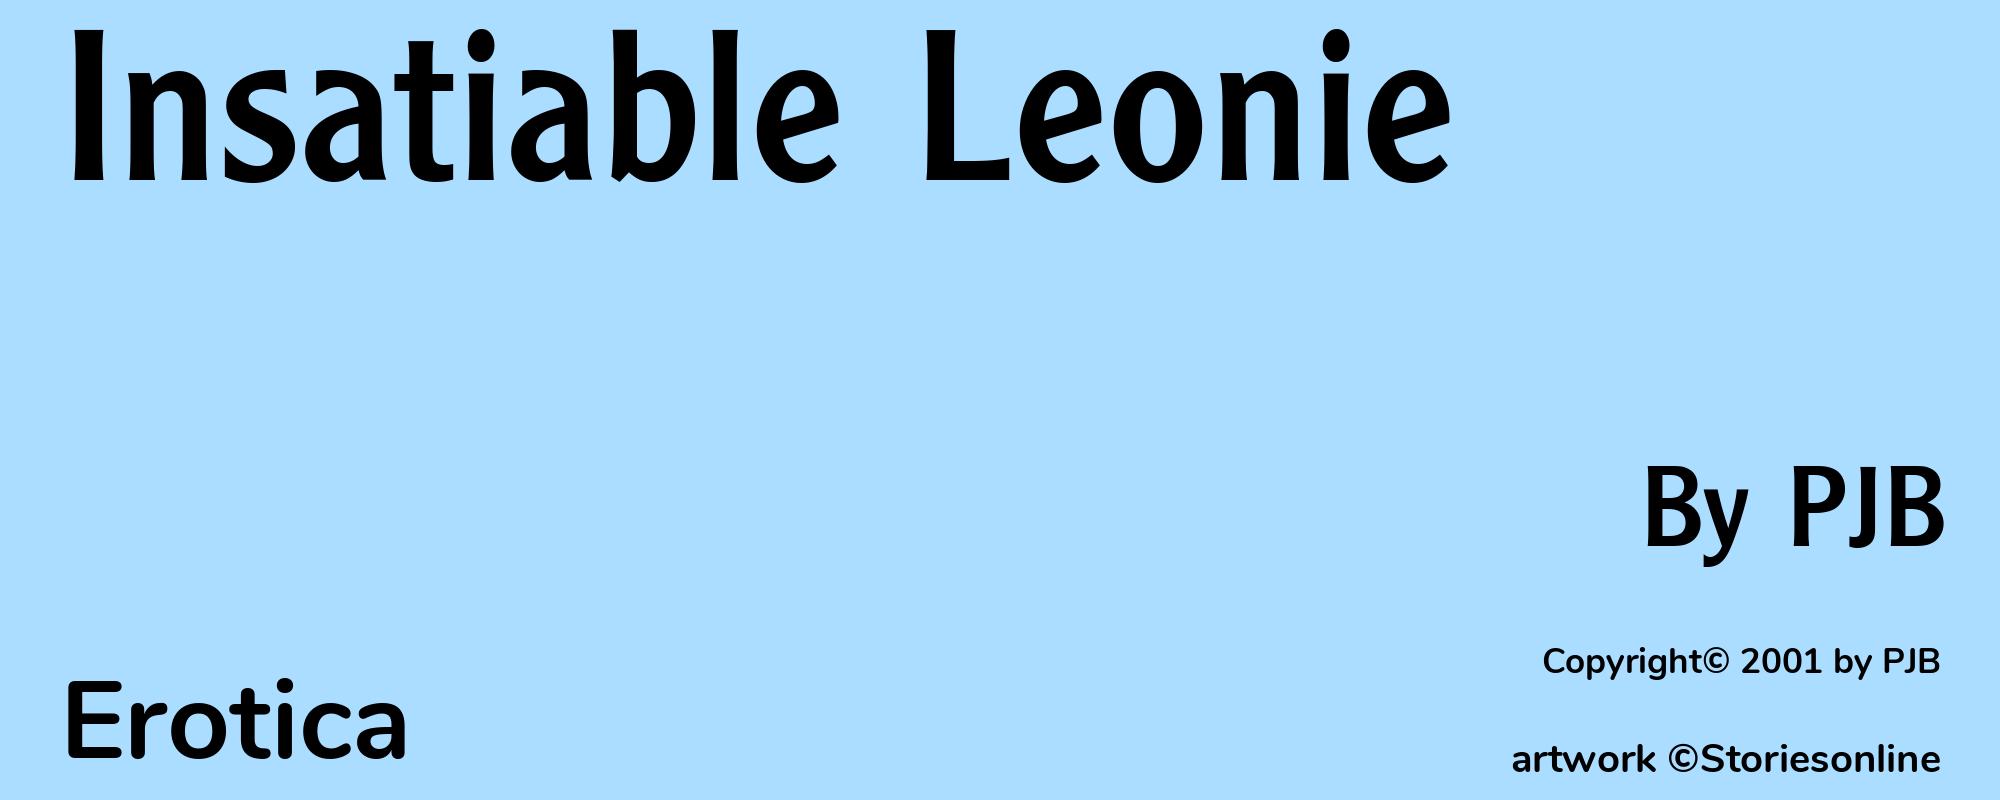 Insatiable Leonie - Cover